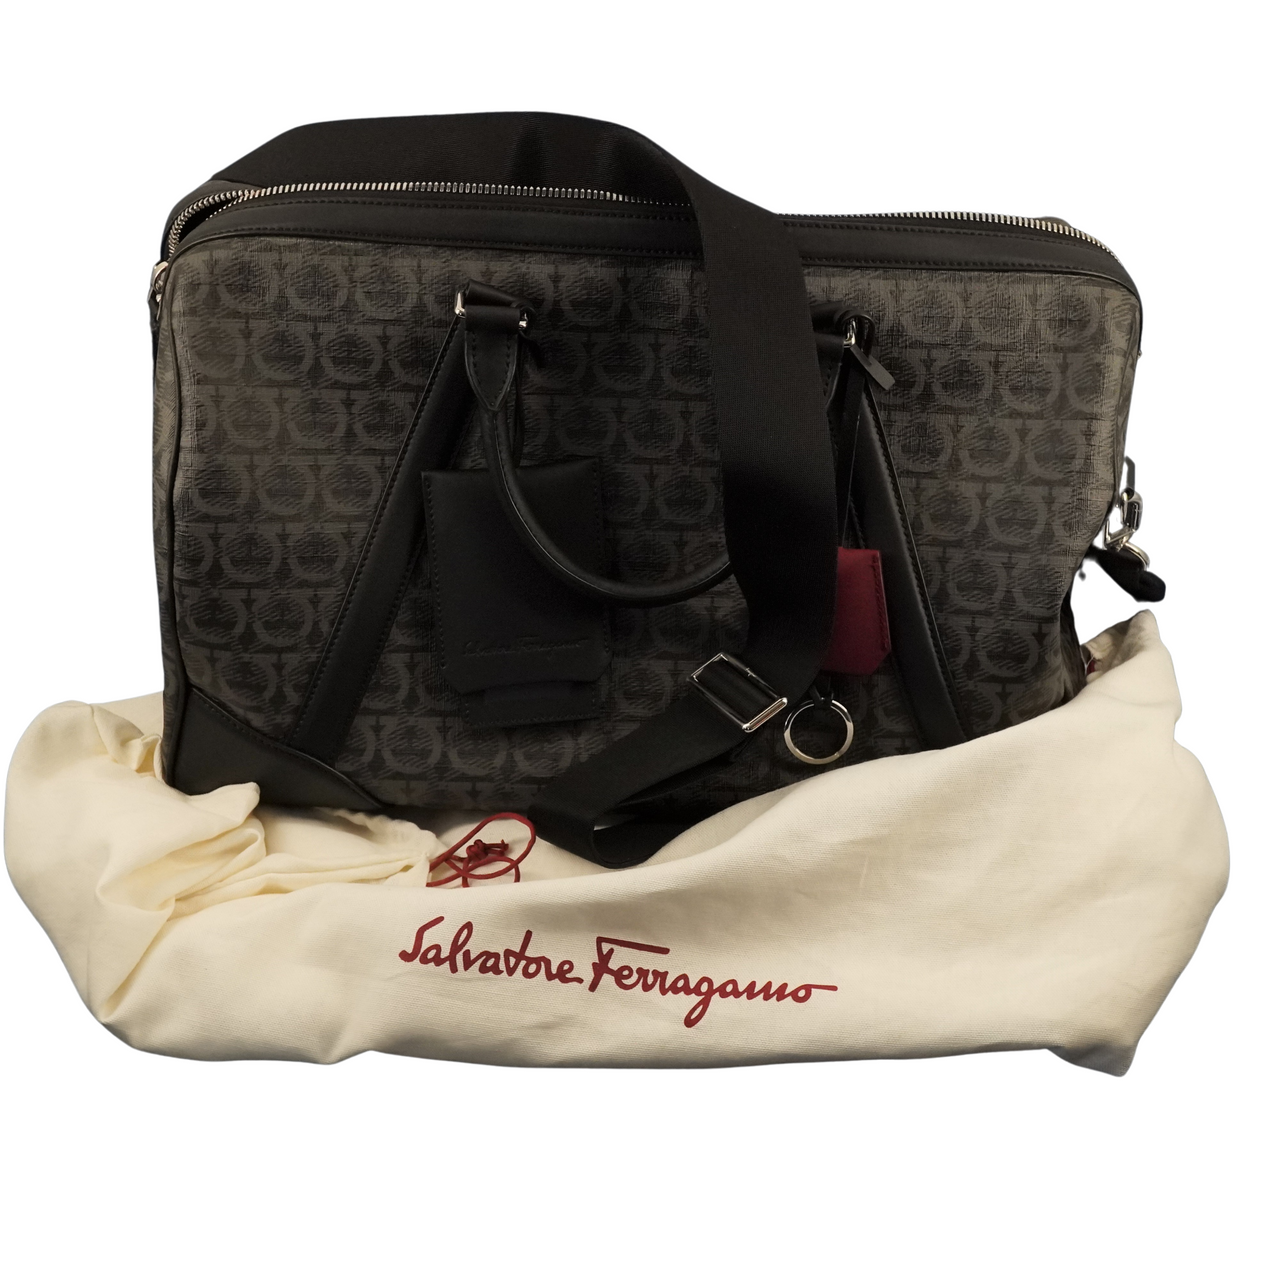 Louis Vuitton Trio Messenger Handbag Monogram Eclipse, A+ Cond.! - Free  Ship USA - The Happy Coin